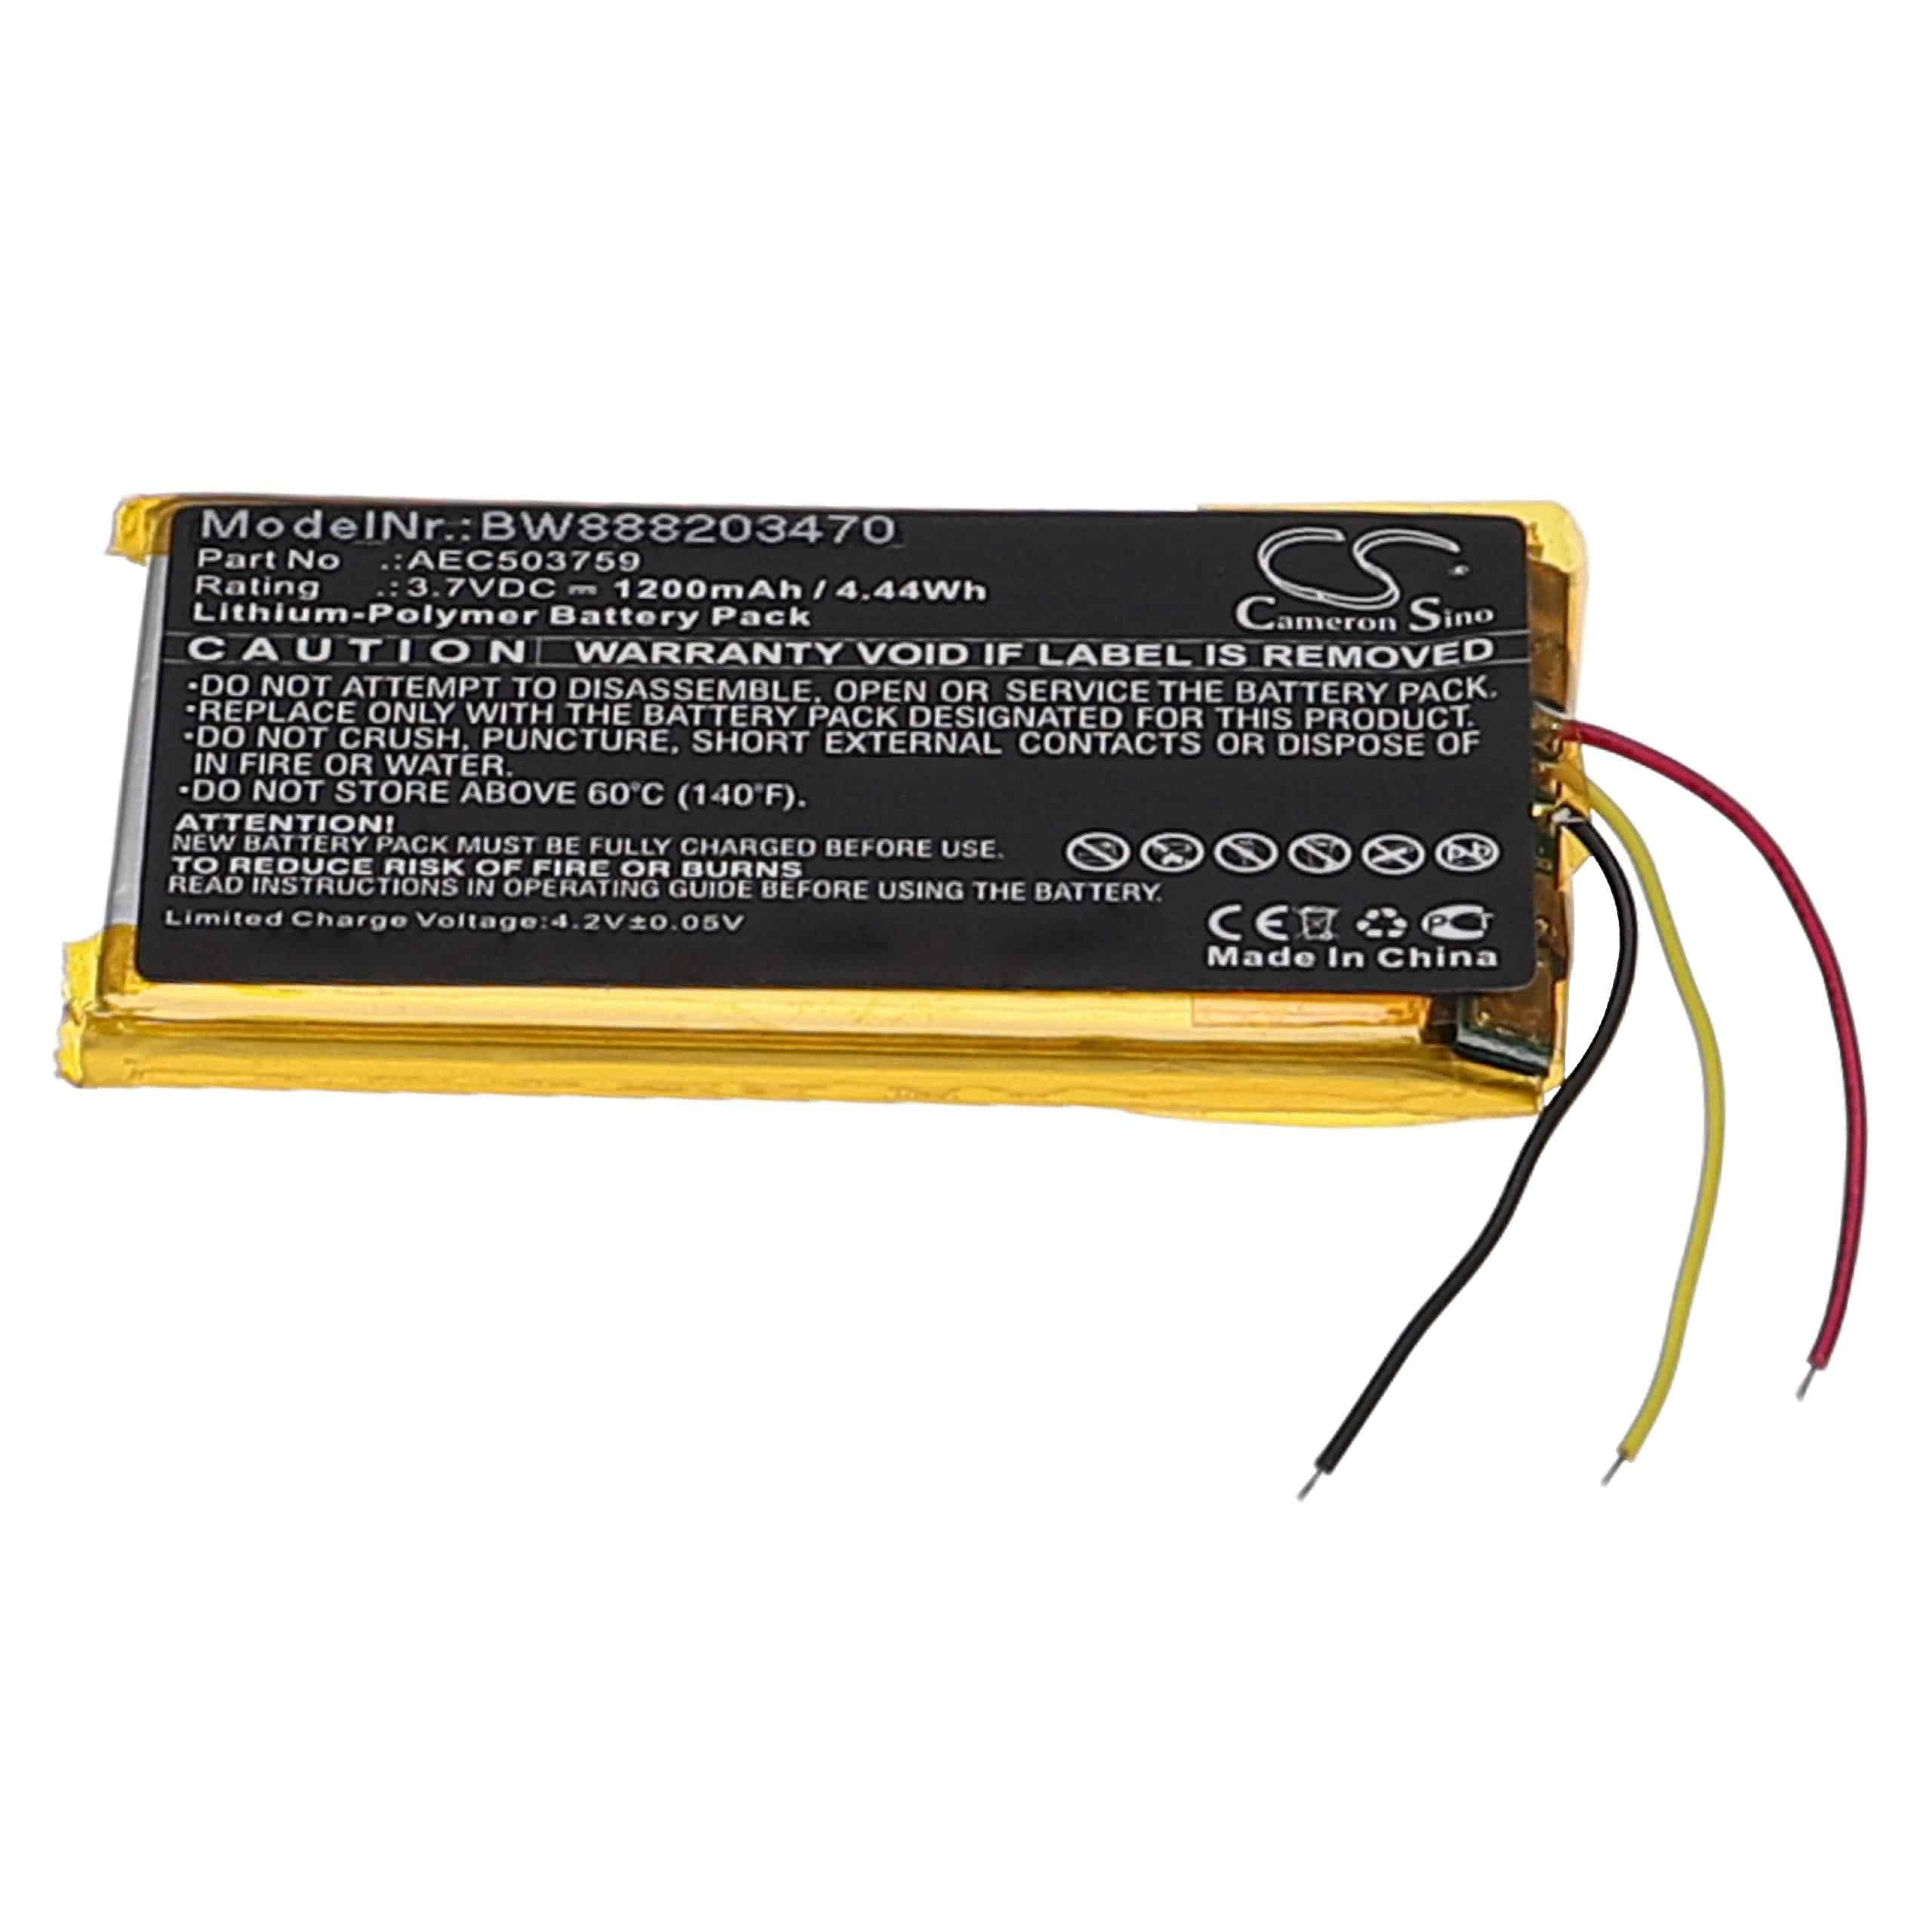 Akumulator do słuchawek bezprzewodowych zamiennik SteelSeries AEC503759 - 1200 mAh 3,7 V LiPo